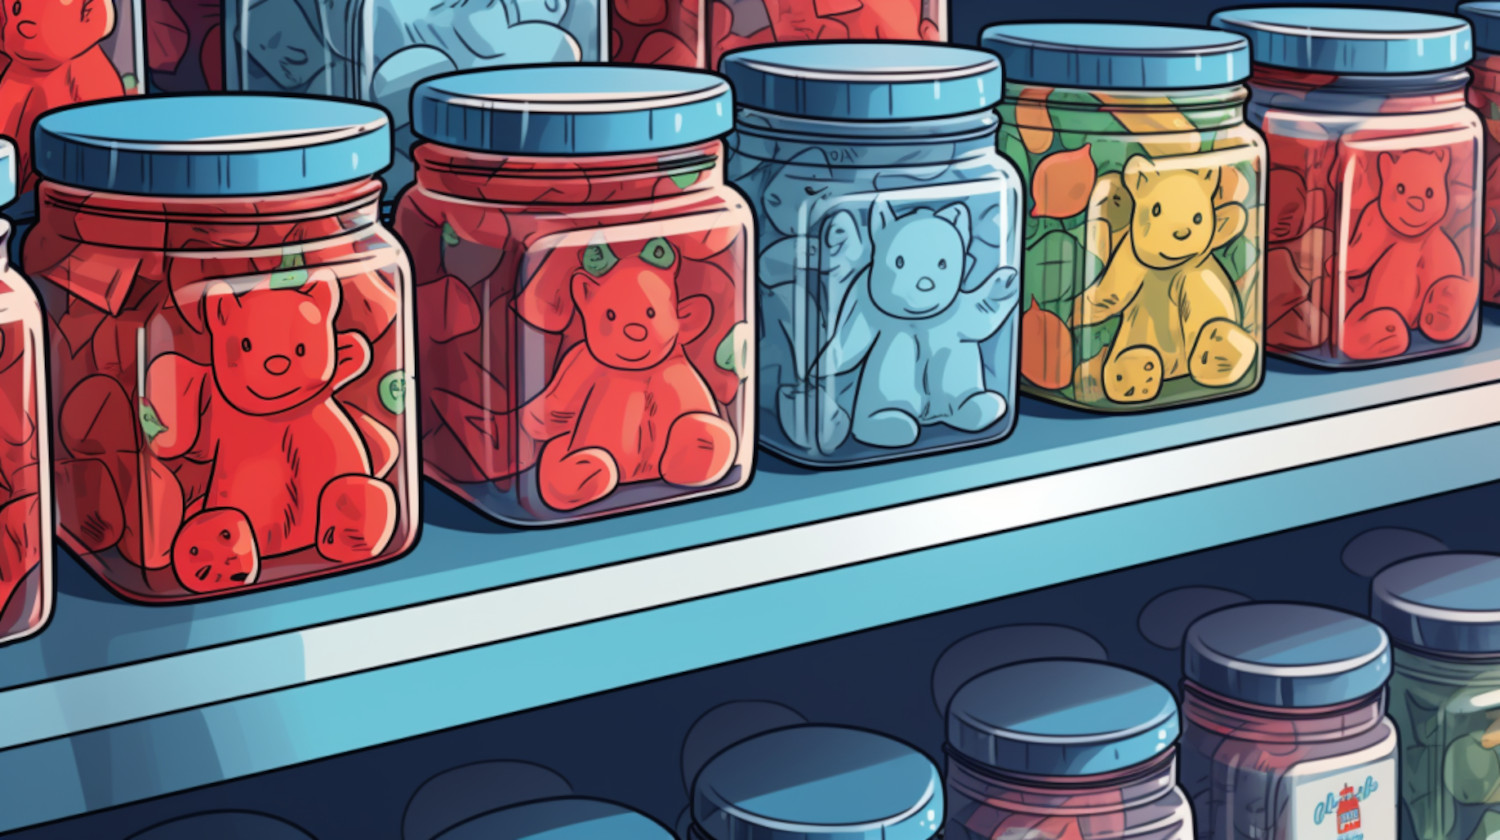 Recipe: Cannabis Gummy Bears with Vegetable Glycerin